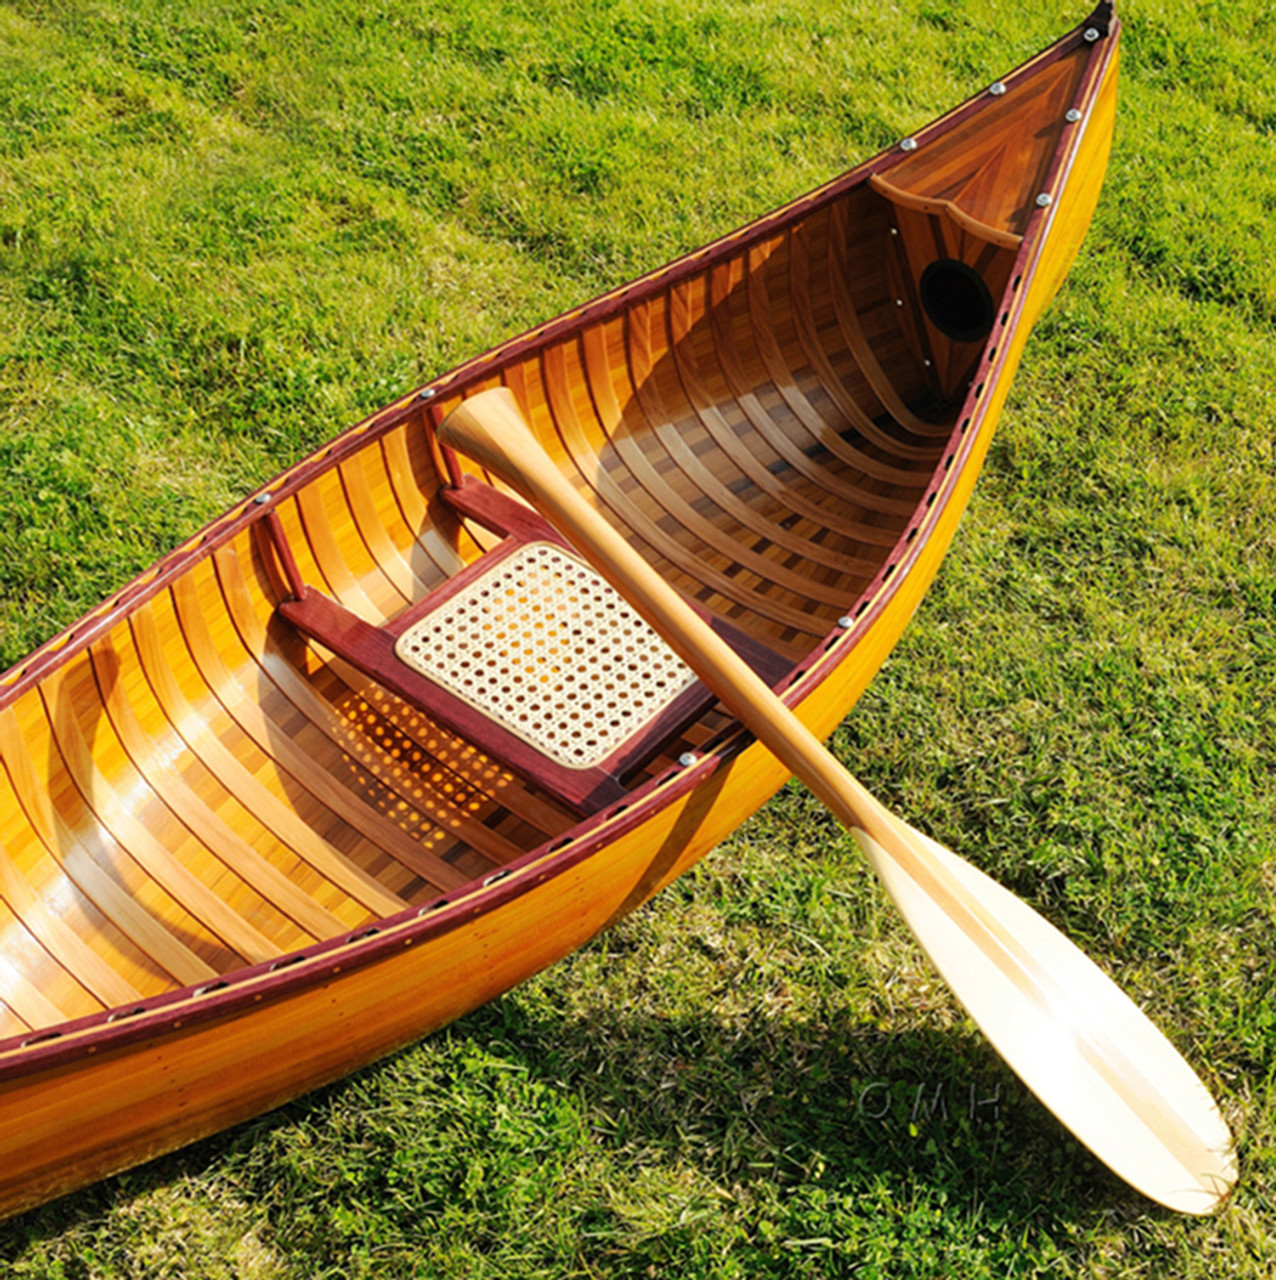 Display Cedar Wood Strip Canoe Wooden Model Boat 